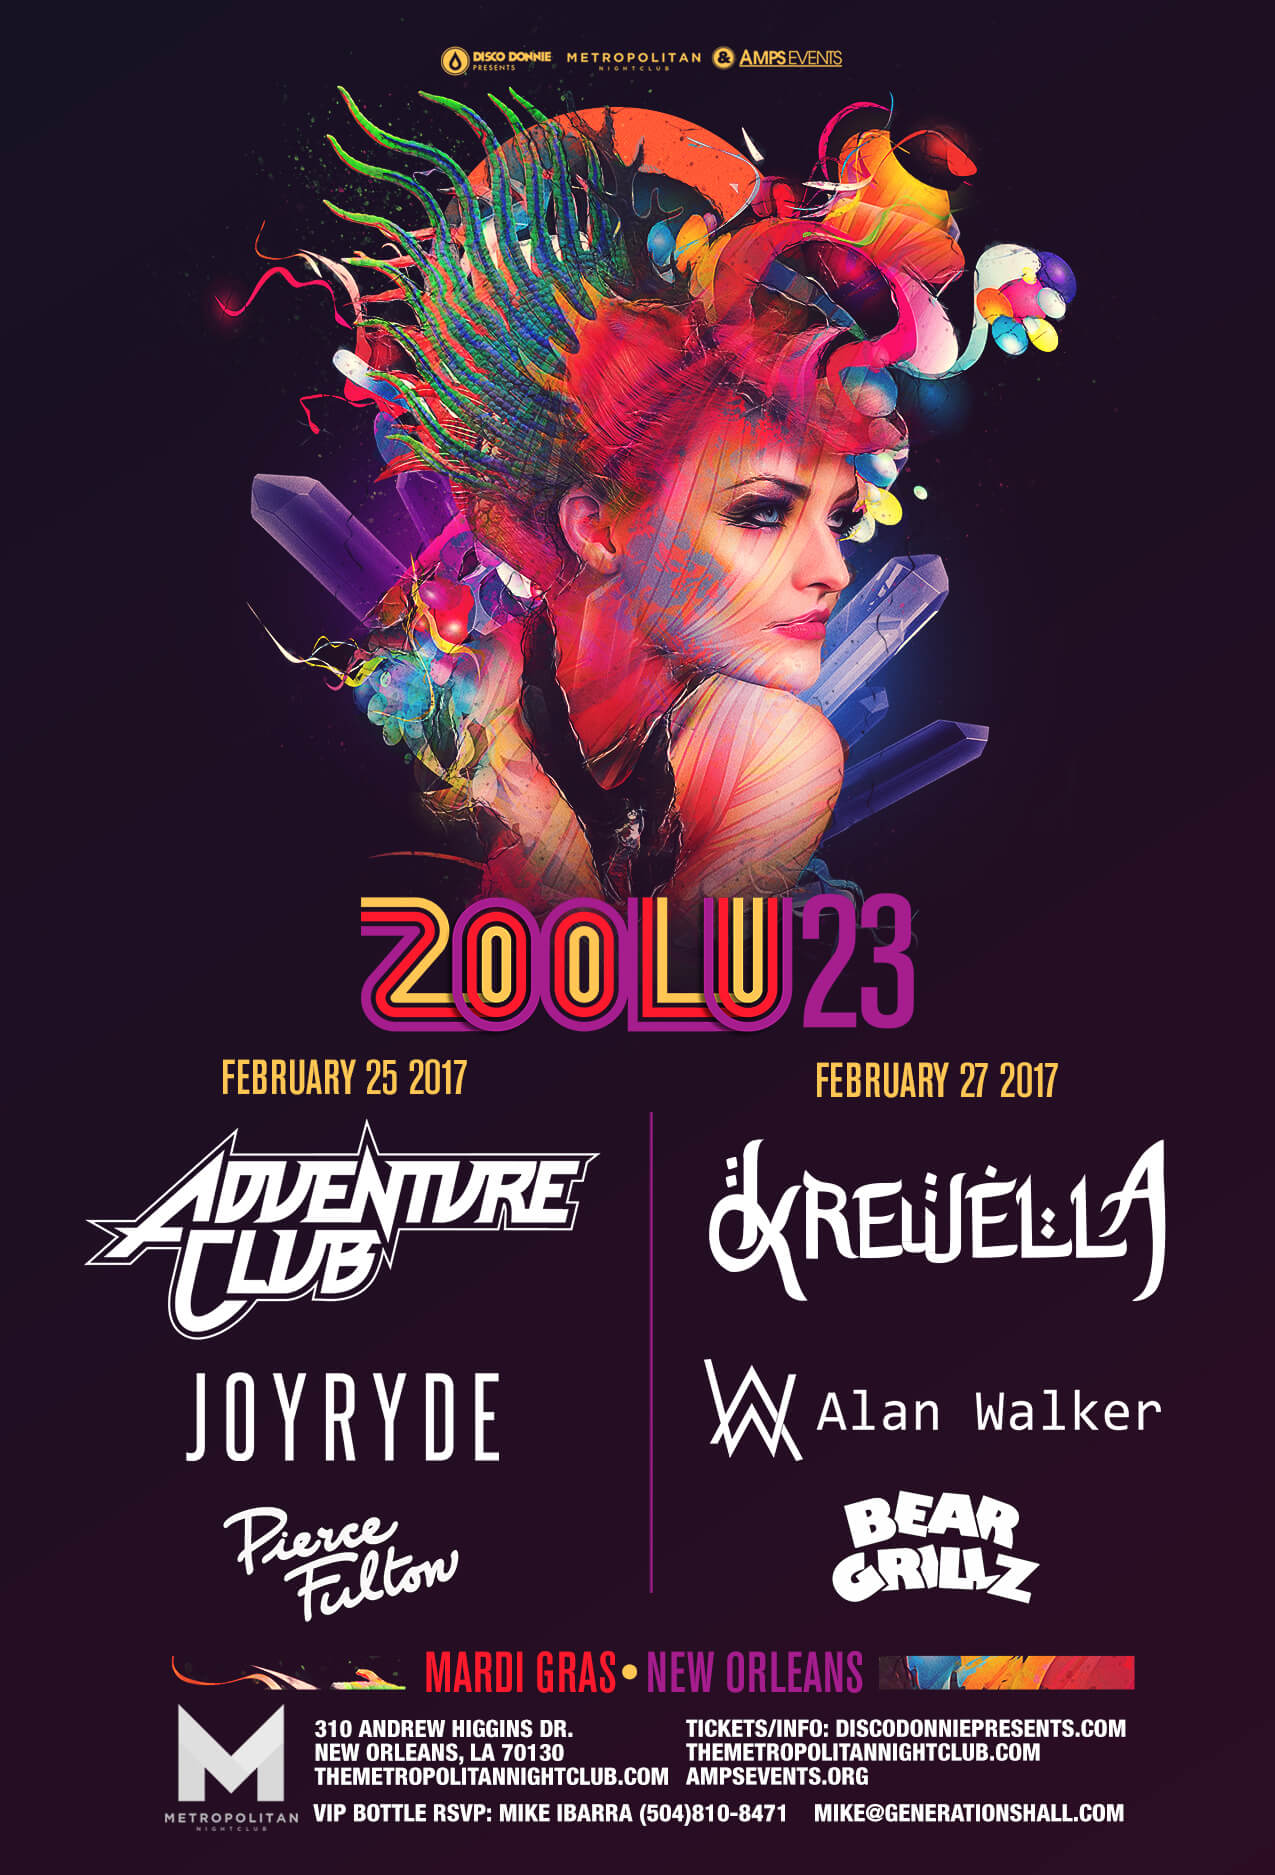 Zoolu 23 is Coming to The Metropolitan Nightclub in New Orleans!